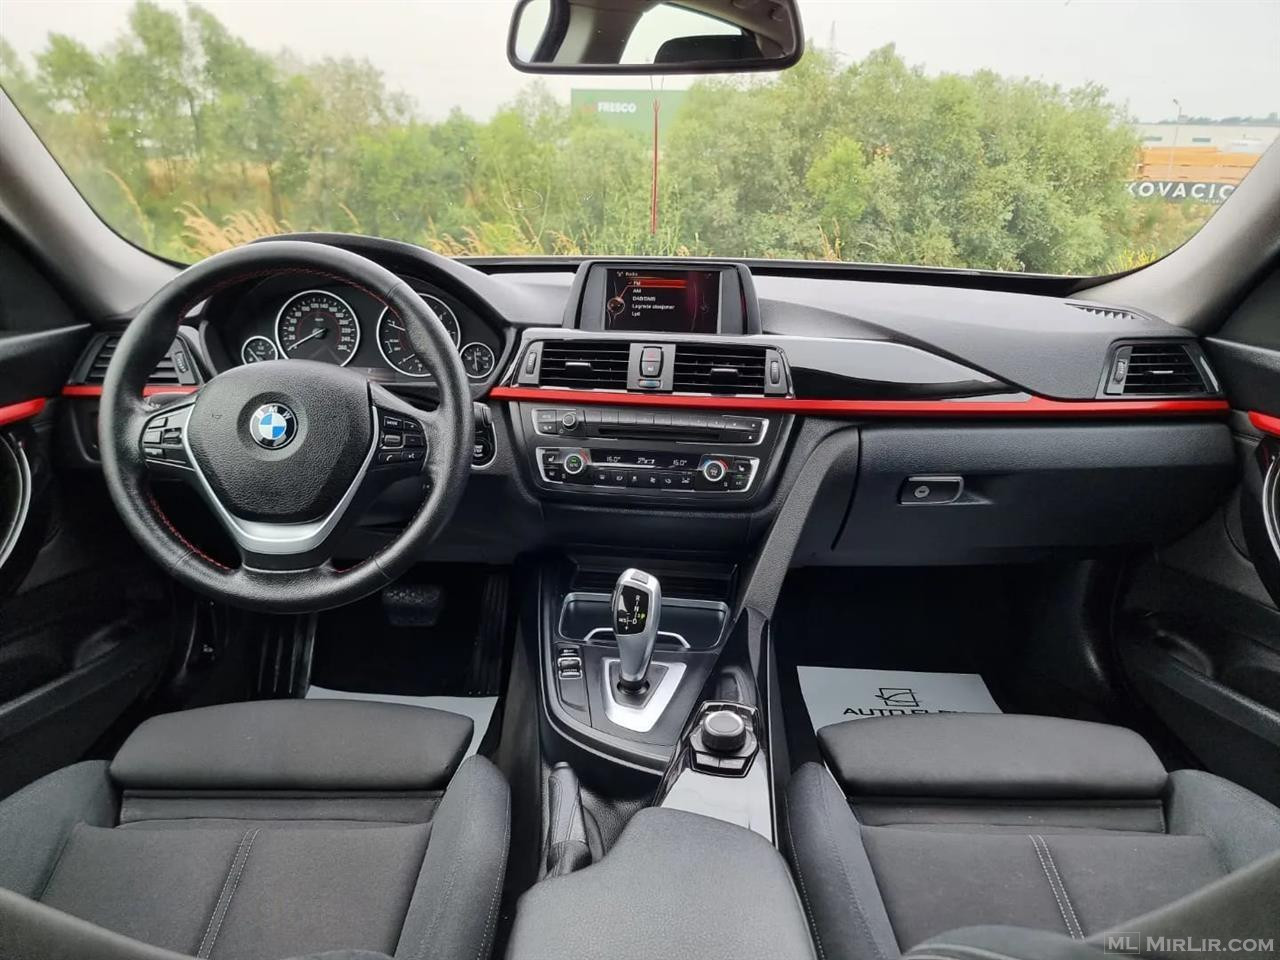 BMW 320 D AUTOMATIK VITI 2016 X DRIVE I DOGANUAR 160.000 KM